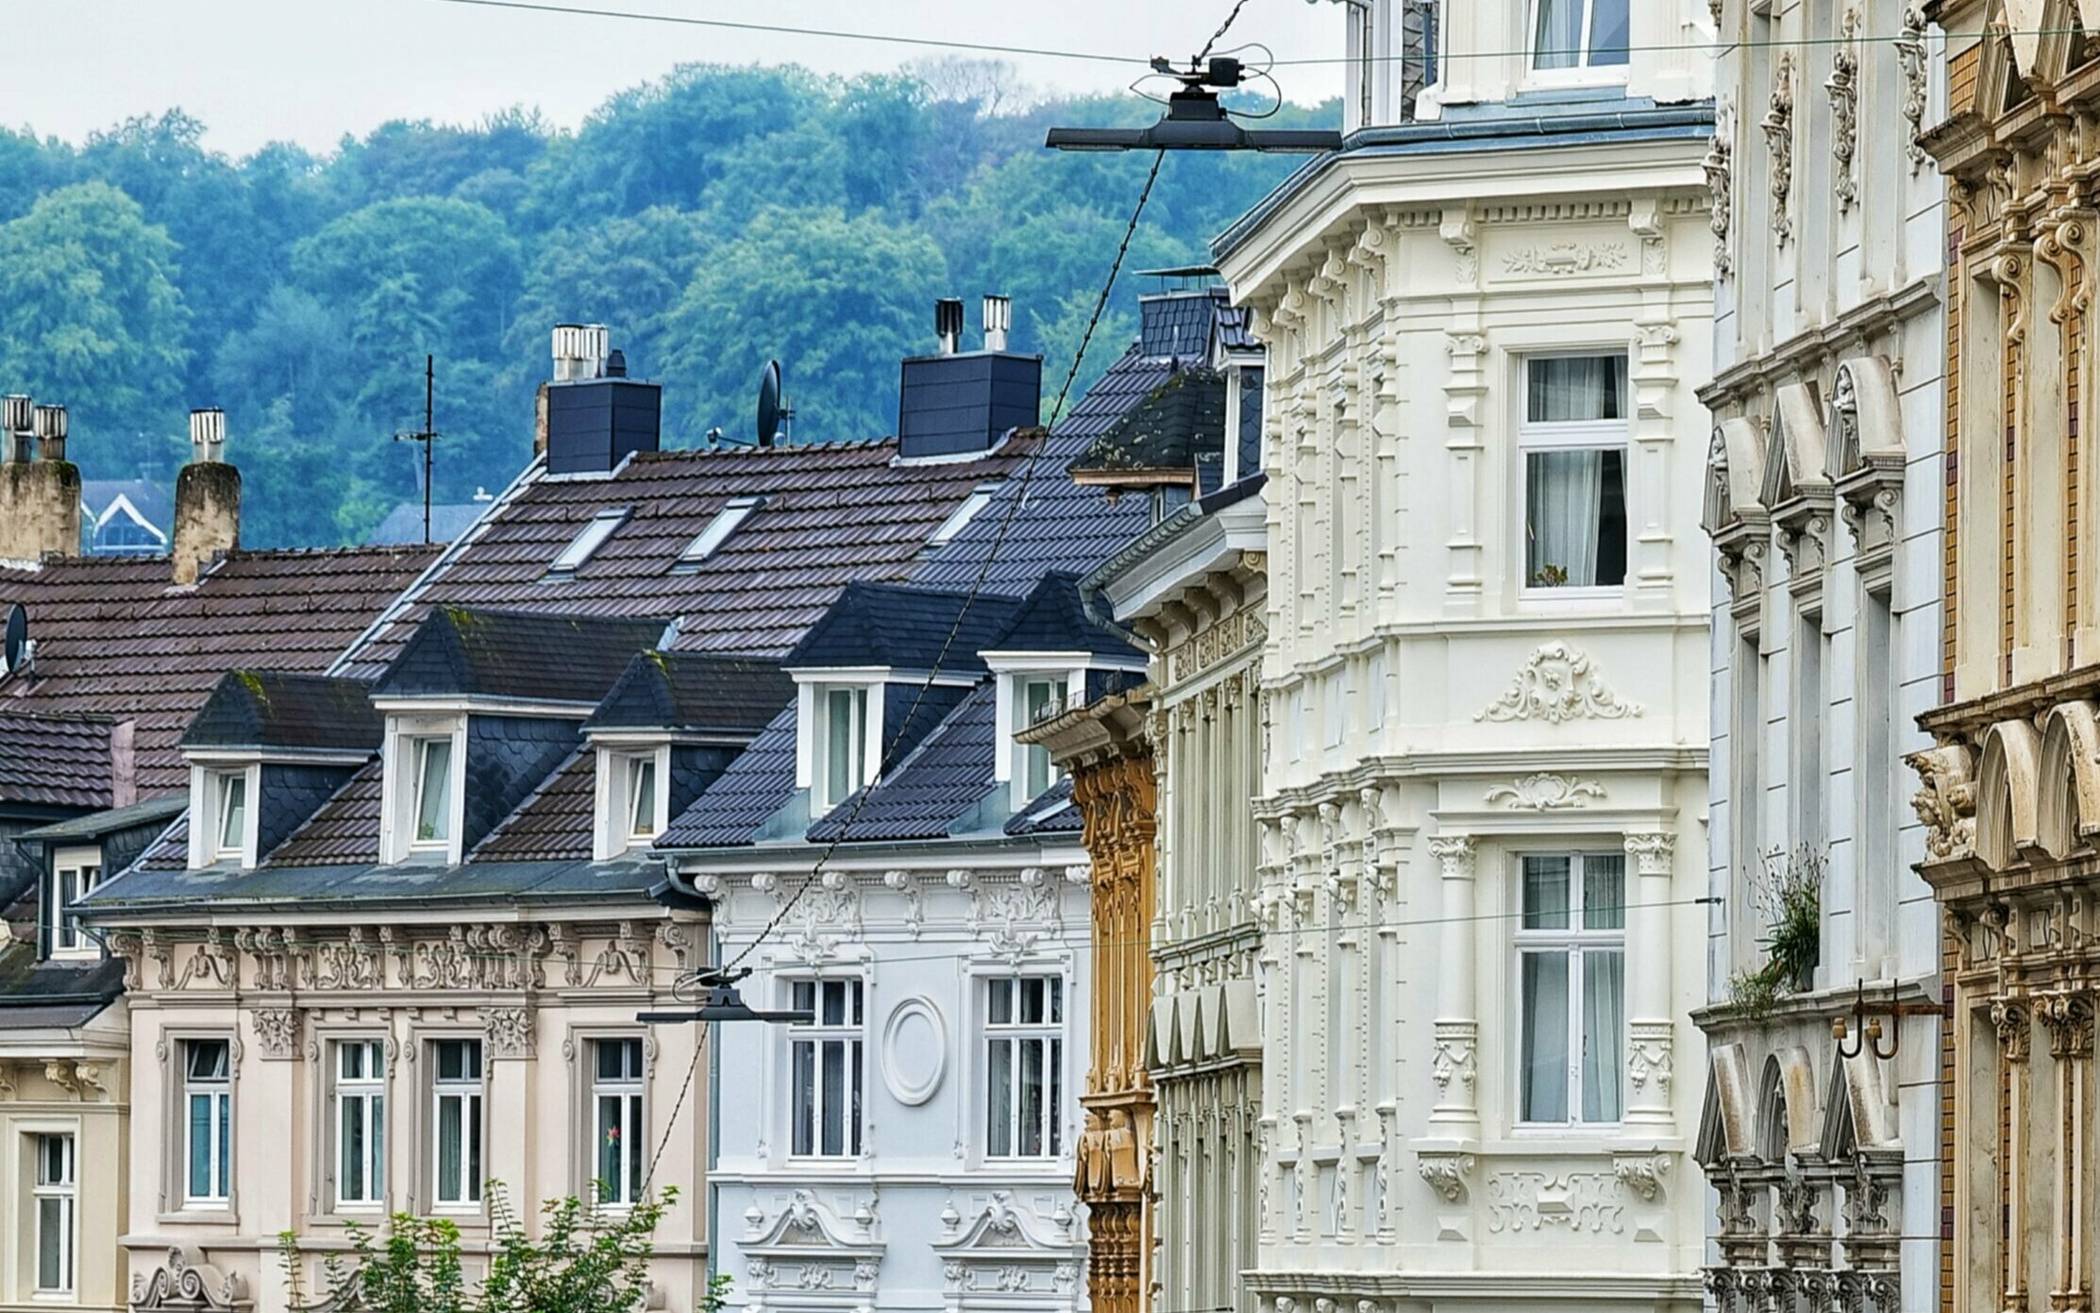 Typisch Ölberg: dichte Bebauung mit denkmalgeschützten Häusern – hier an der Marienstraße. Wie kann in einem solchen Viertel die Frage nach Solaranlagen auf den Dächern geklärt werden?  